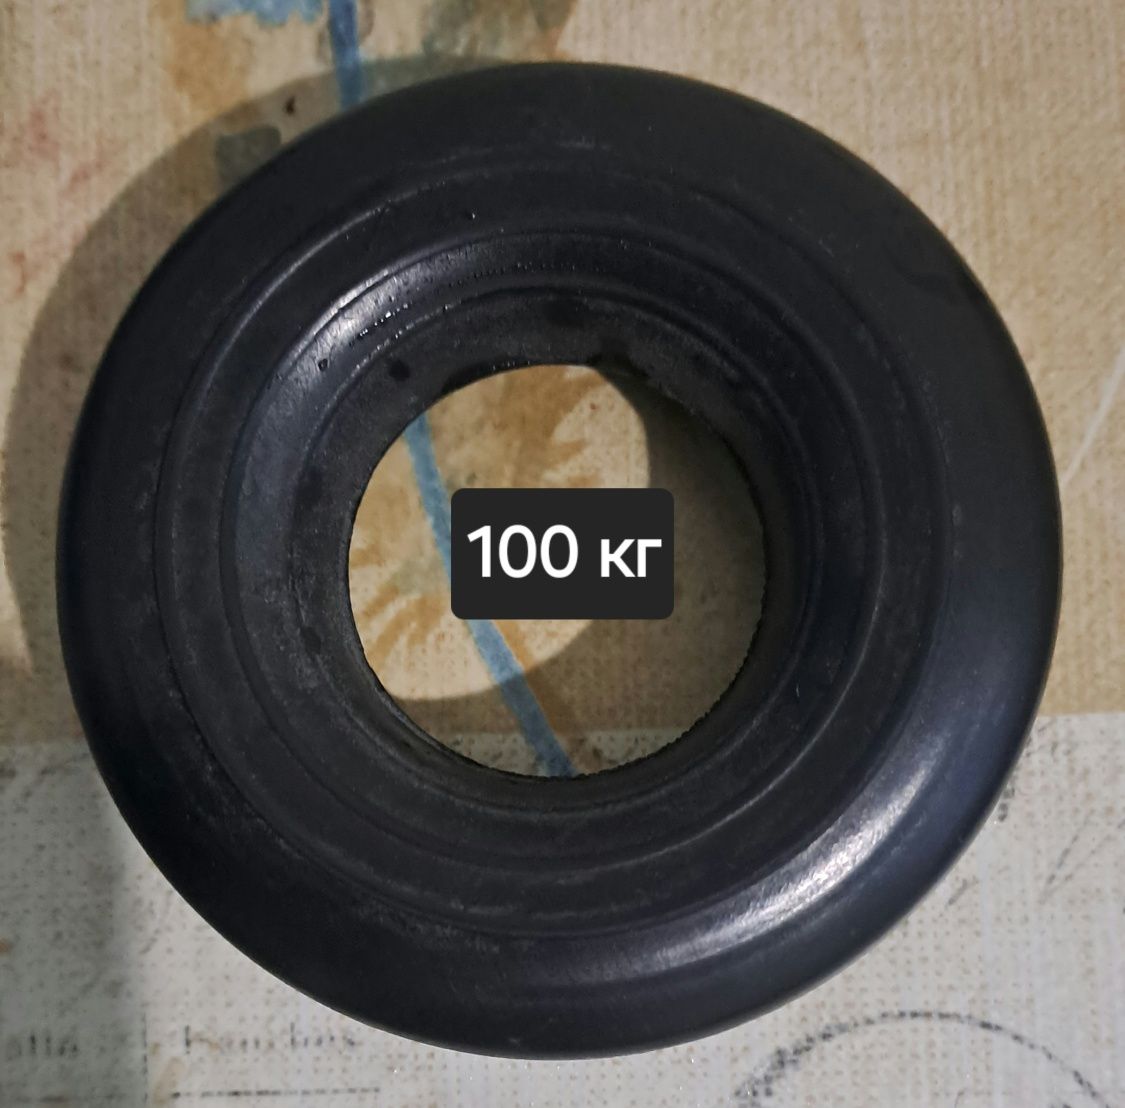 Кистевой эспандер Воронцова 100 кг